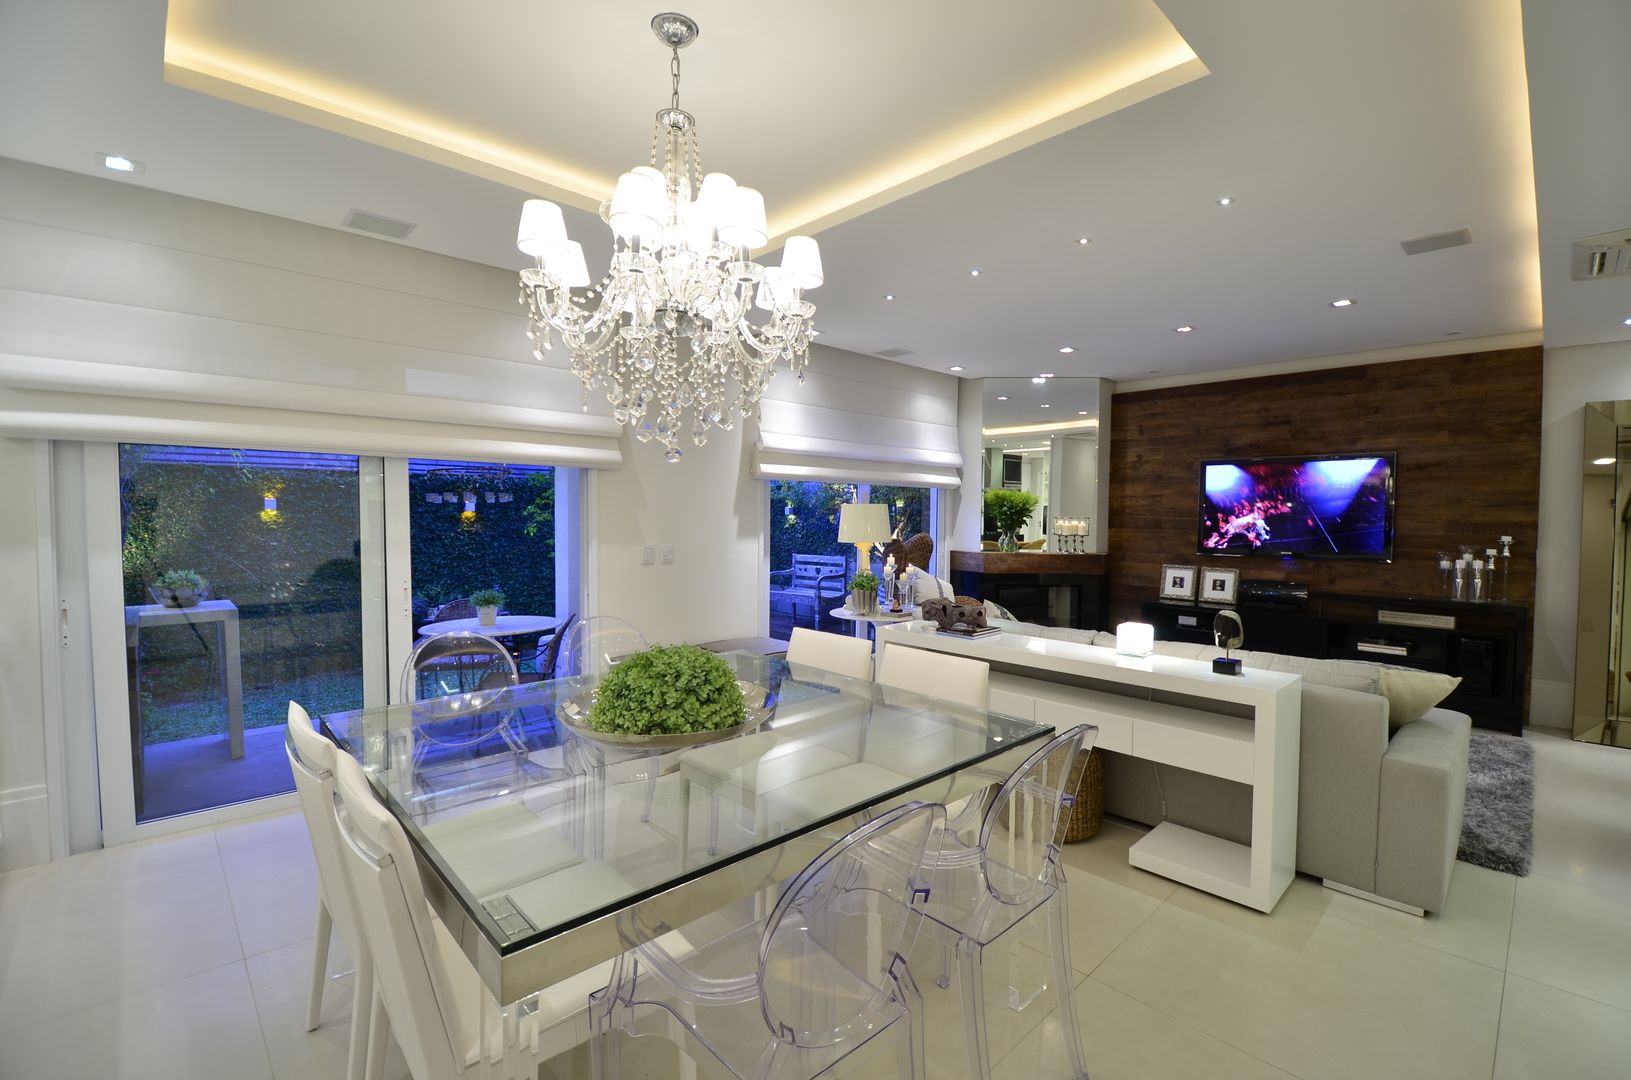 Elegante casa em condomínio, Tania Bertolucci de Souza | Arquitetos Associados Tania Bertolucci de Souza | Arquitetos Associados Ruang Makan Modern